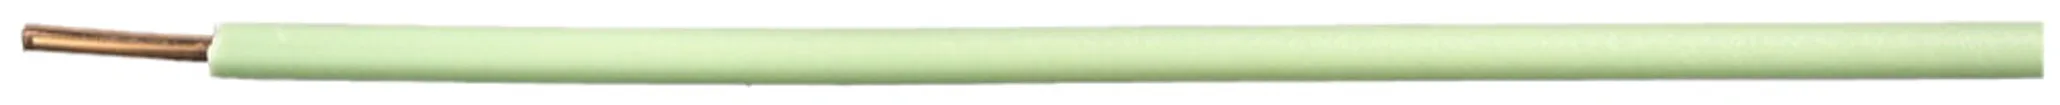 Filo N H07Z1-U senza alogeno 1.5mm² 450/750V verde chiaro Cca 